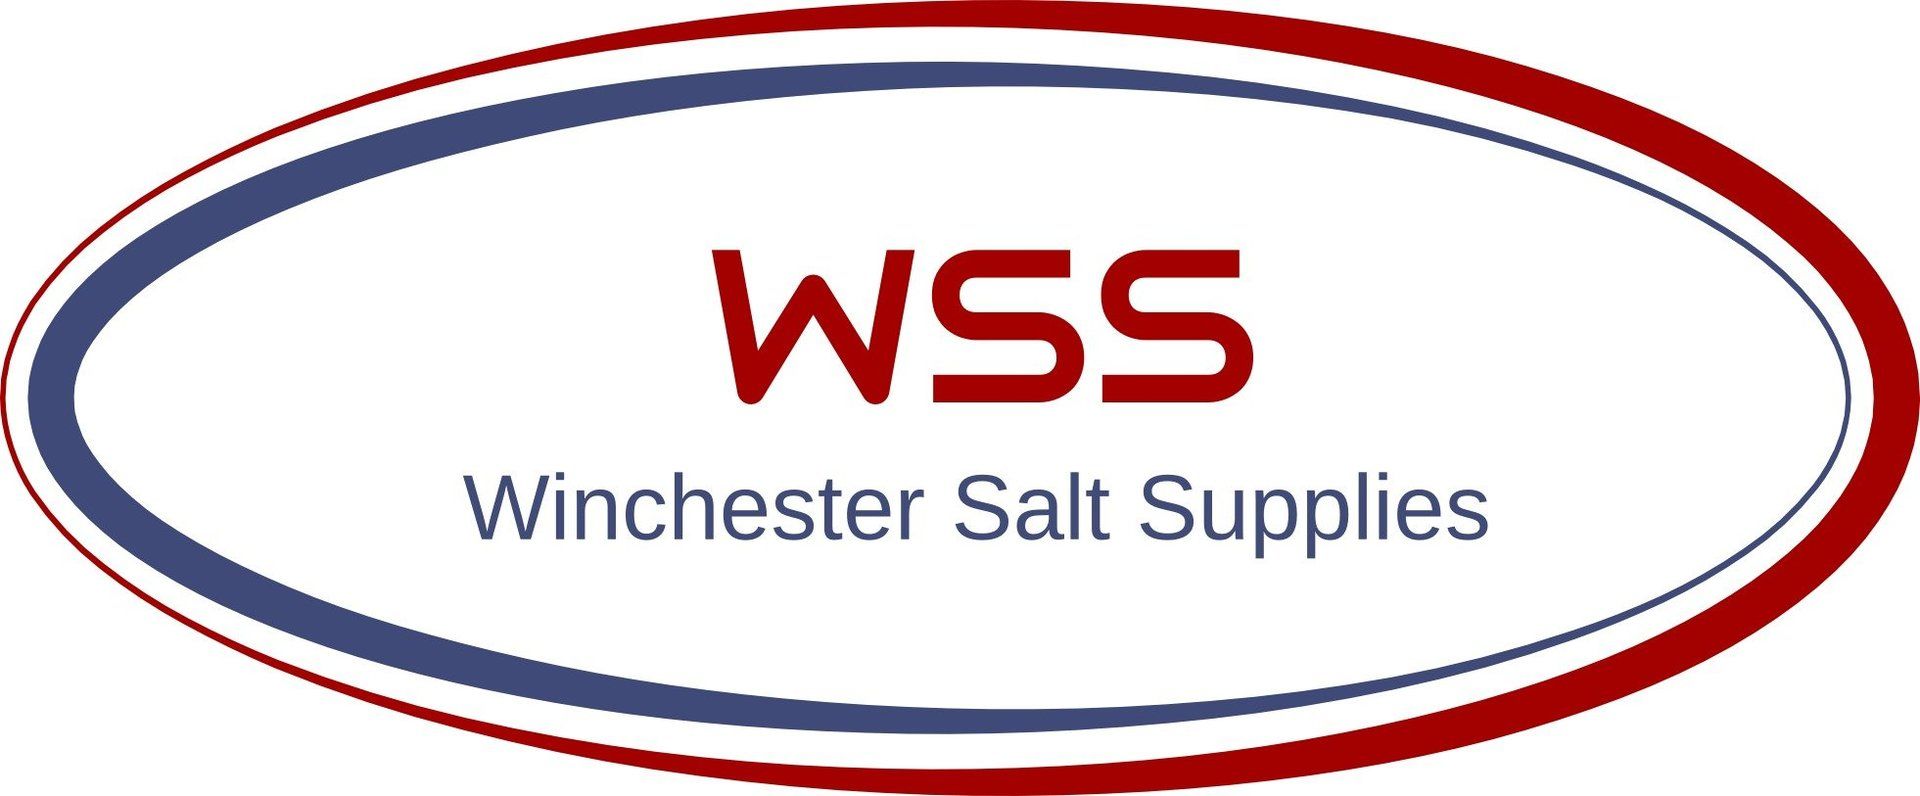 Winchester Salt Supplies logo